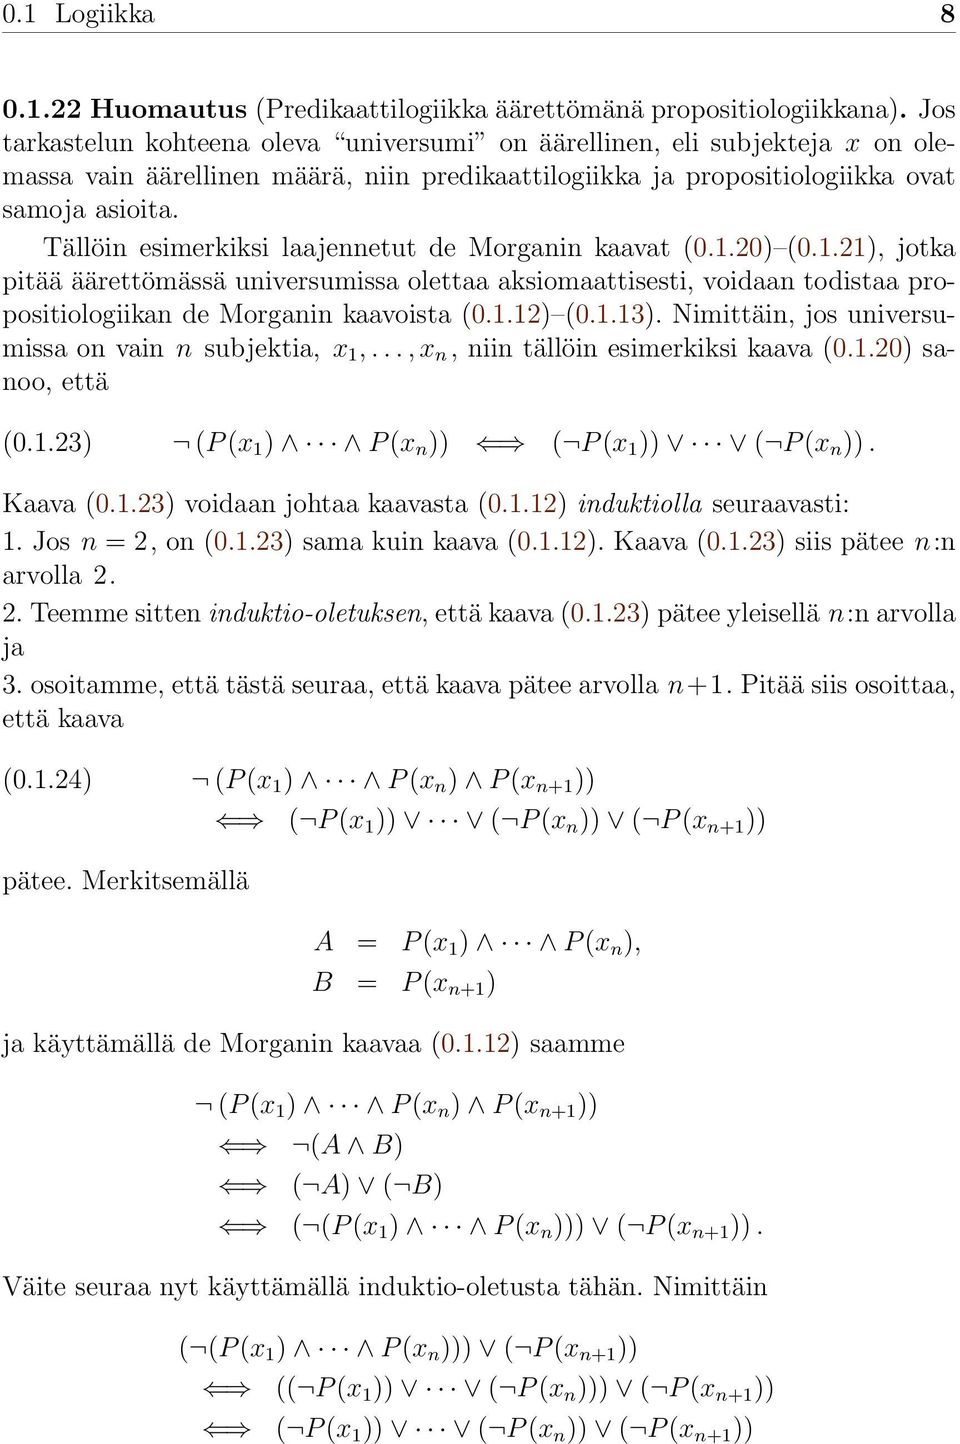 Tällöin esimerkiksi laajennetut de Morganin kaavat (0.1.20) (0.1.21), jotka pitää äärettömässä universumissa olettaa aksiomaattisesti, voidaan todistaa propositiologiikan de Morganin kaavoista (0.1.12) (0.